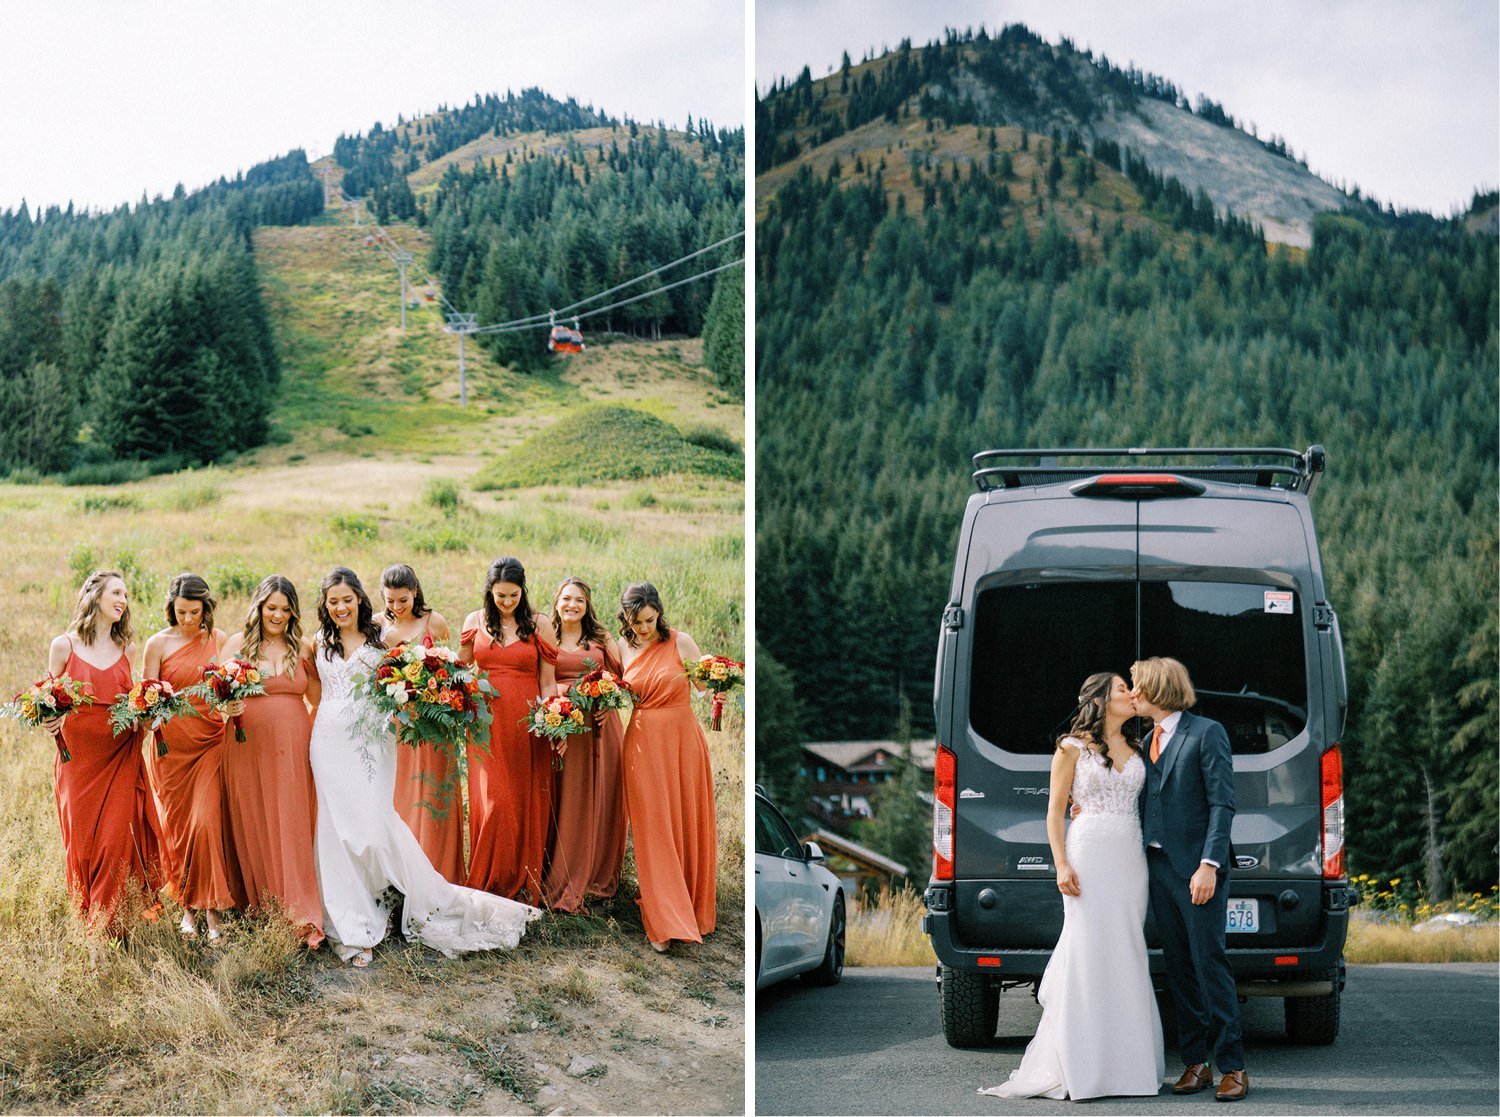 136_Crystal Mountain Resort wedding photos on a mountaintop.jpg